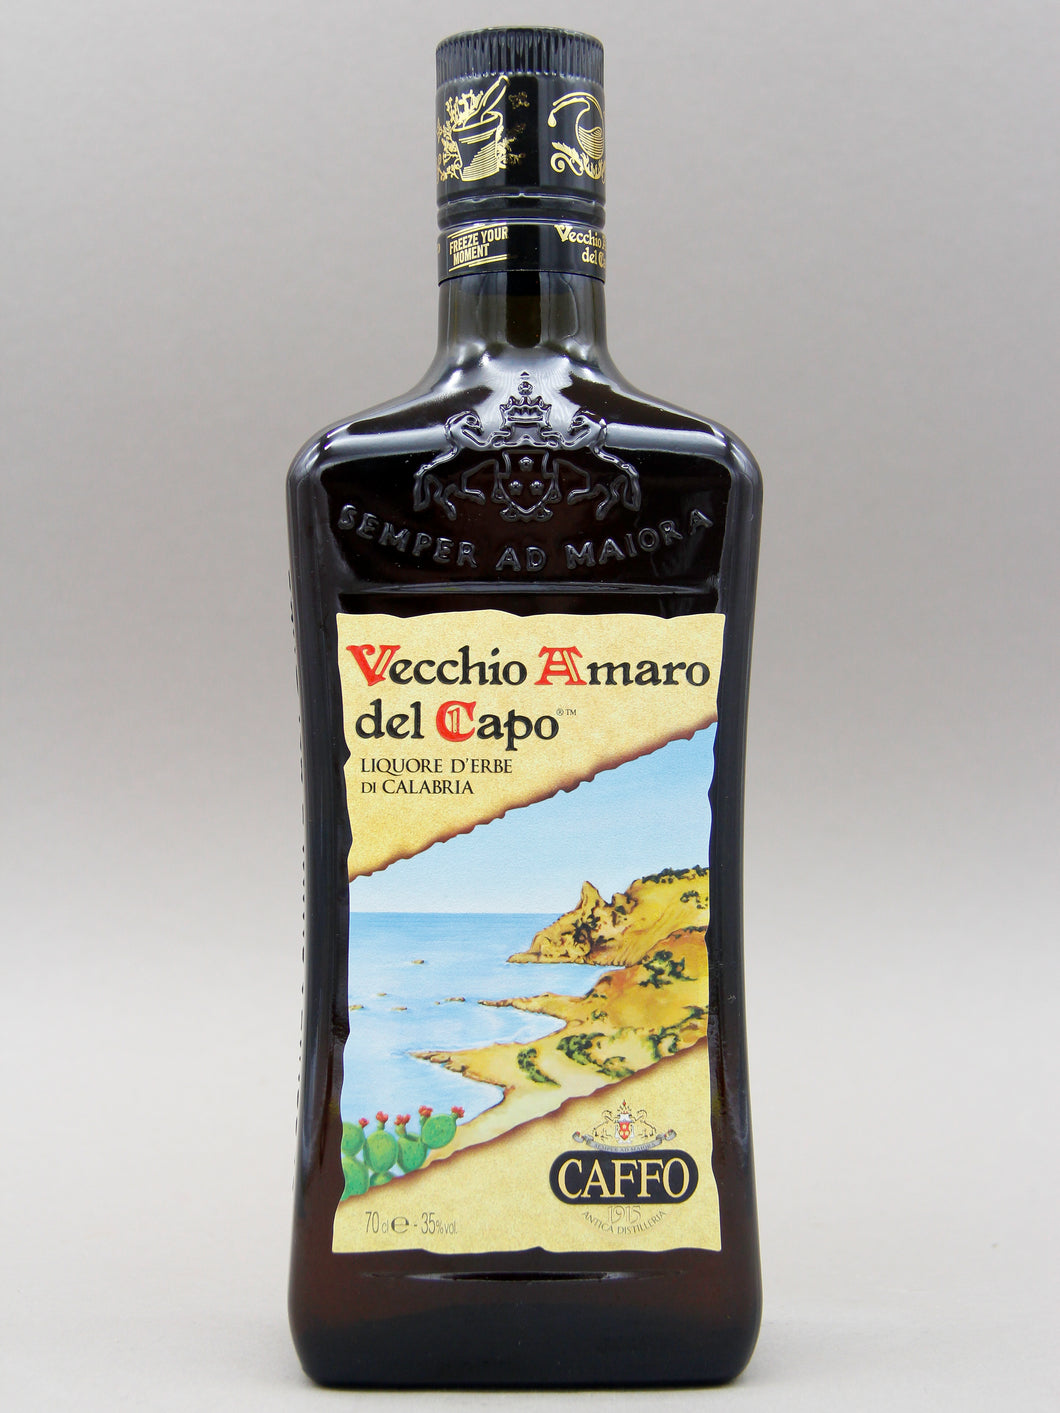 Vecchio Amaro Del Capo, Liquore d'erbe di Calabria, Italy (35%, 70cl)